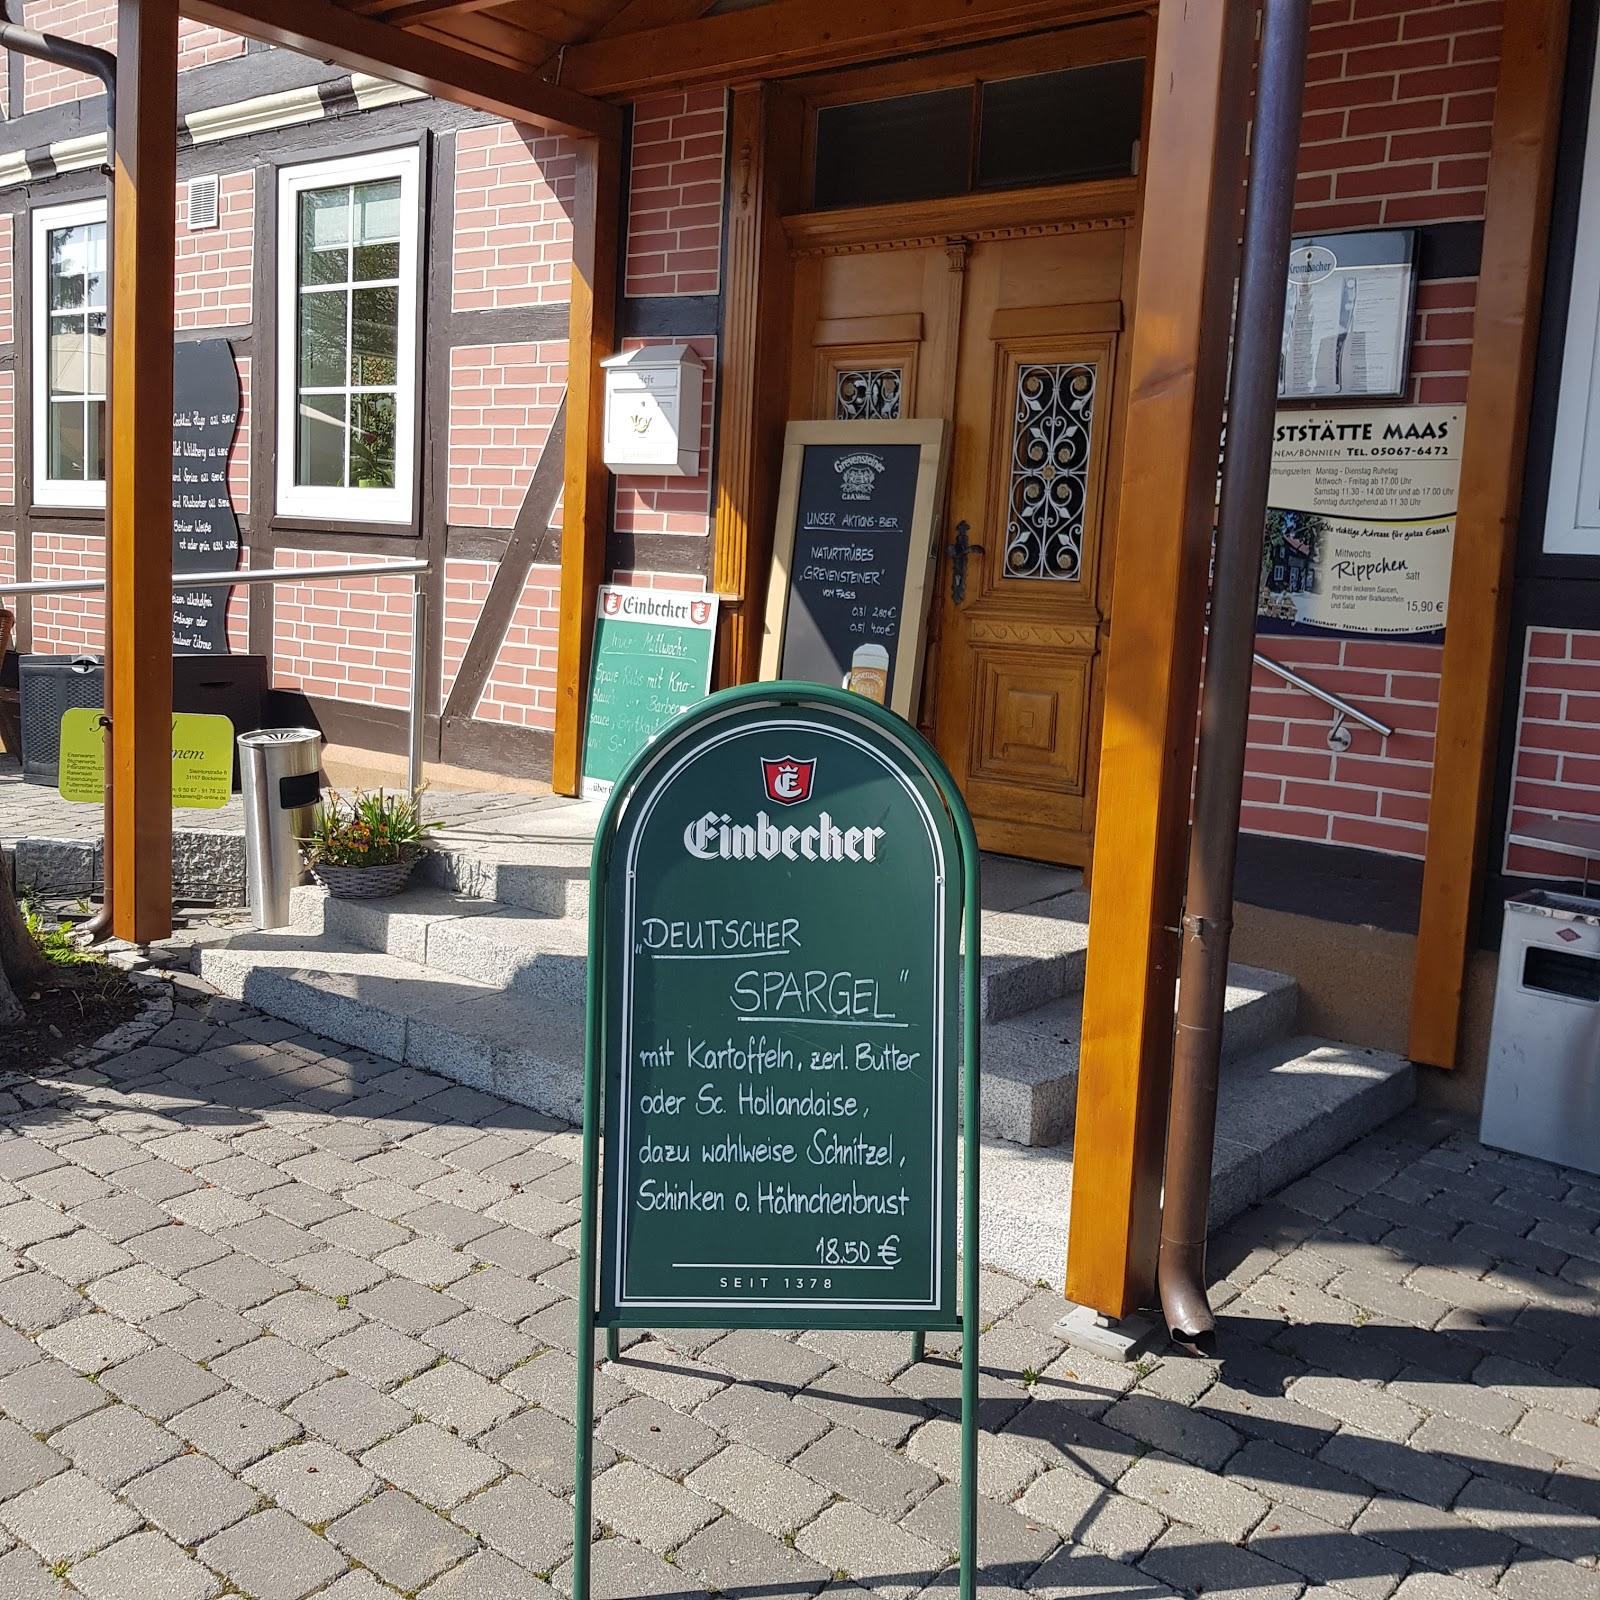 Restaurant "Gaststätte Maas" in  Bockenem